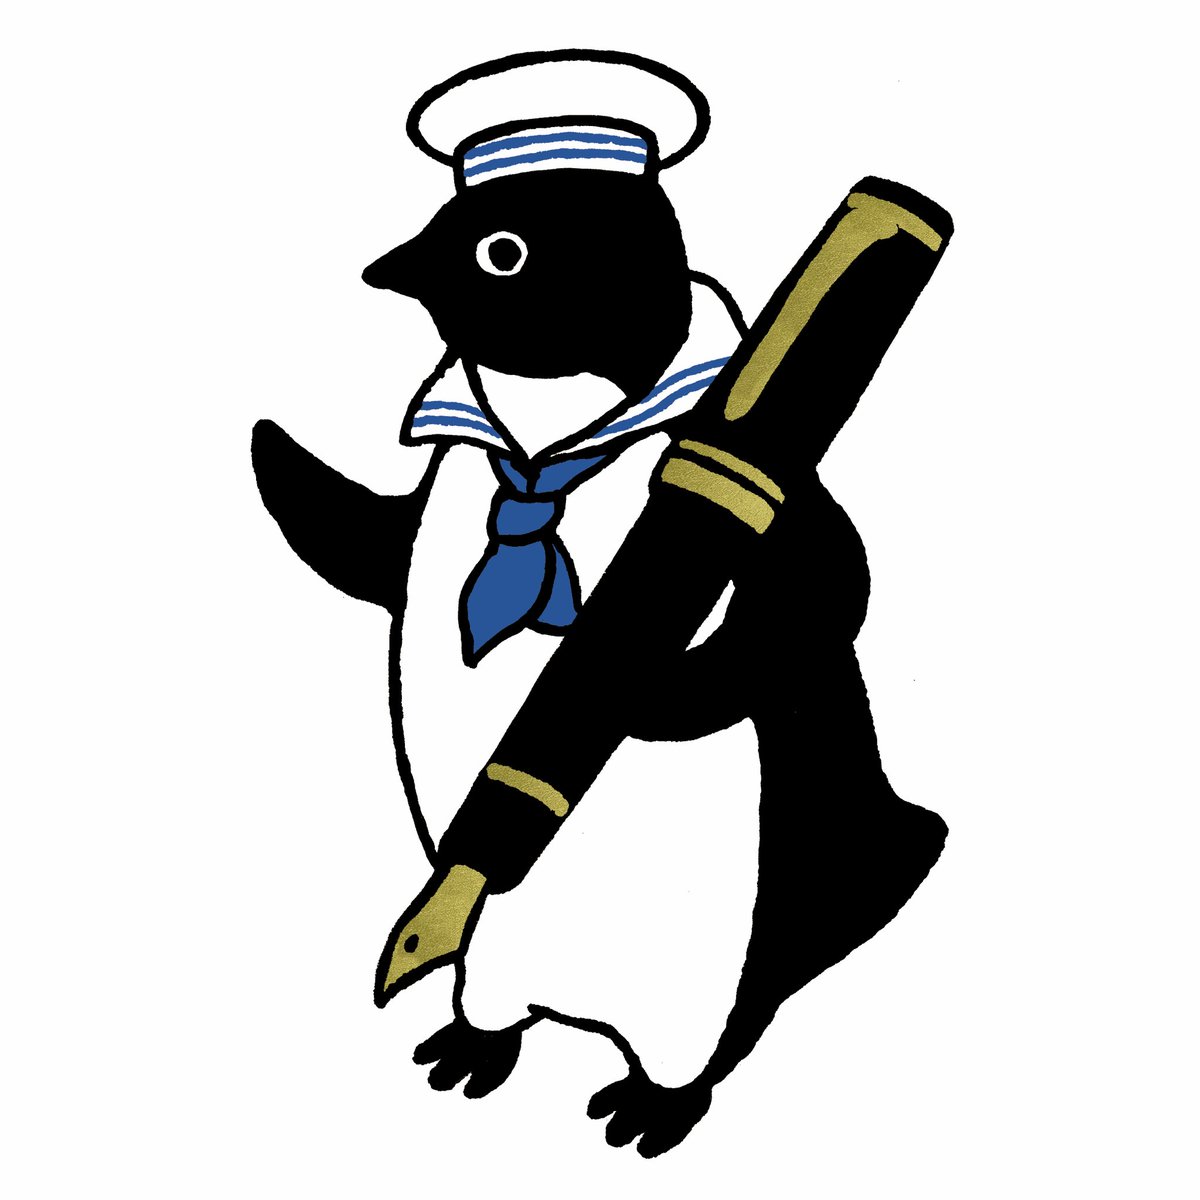 「「ペンギンはペンでペンギンと綴る」の万年筆ができたのがうれしすぎて、万年筆がテー」|さかざきちはる＠展覧会ペンギンアパートメント4/21〜のイラスト